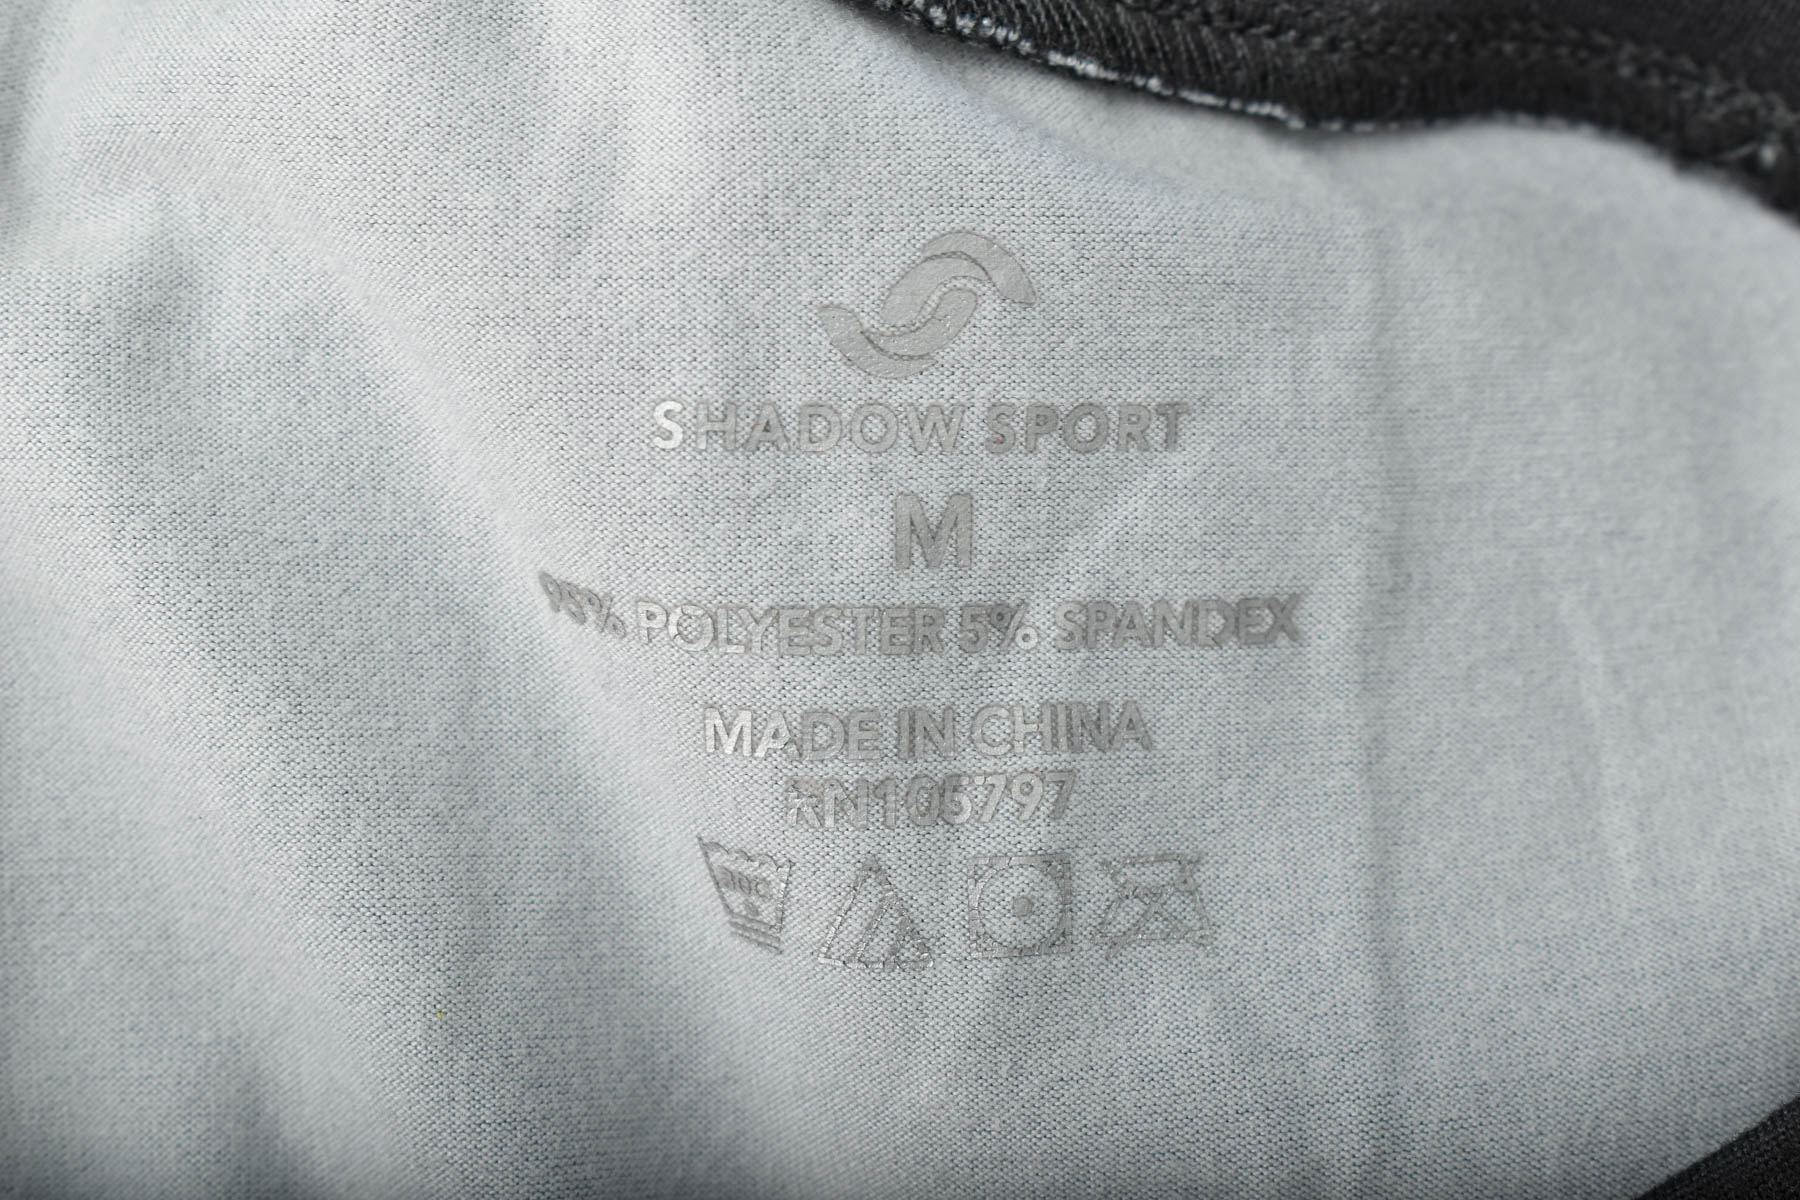 Tricou de damă - SHADOW SPORT - 2